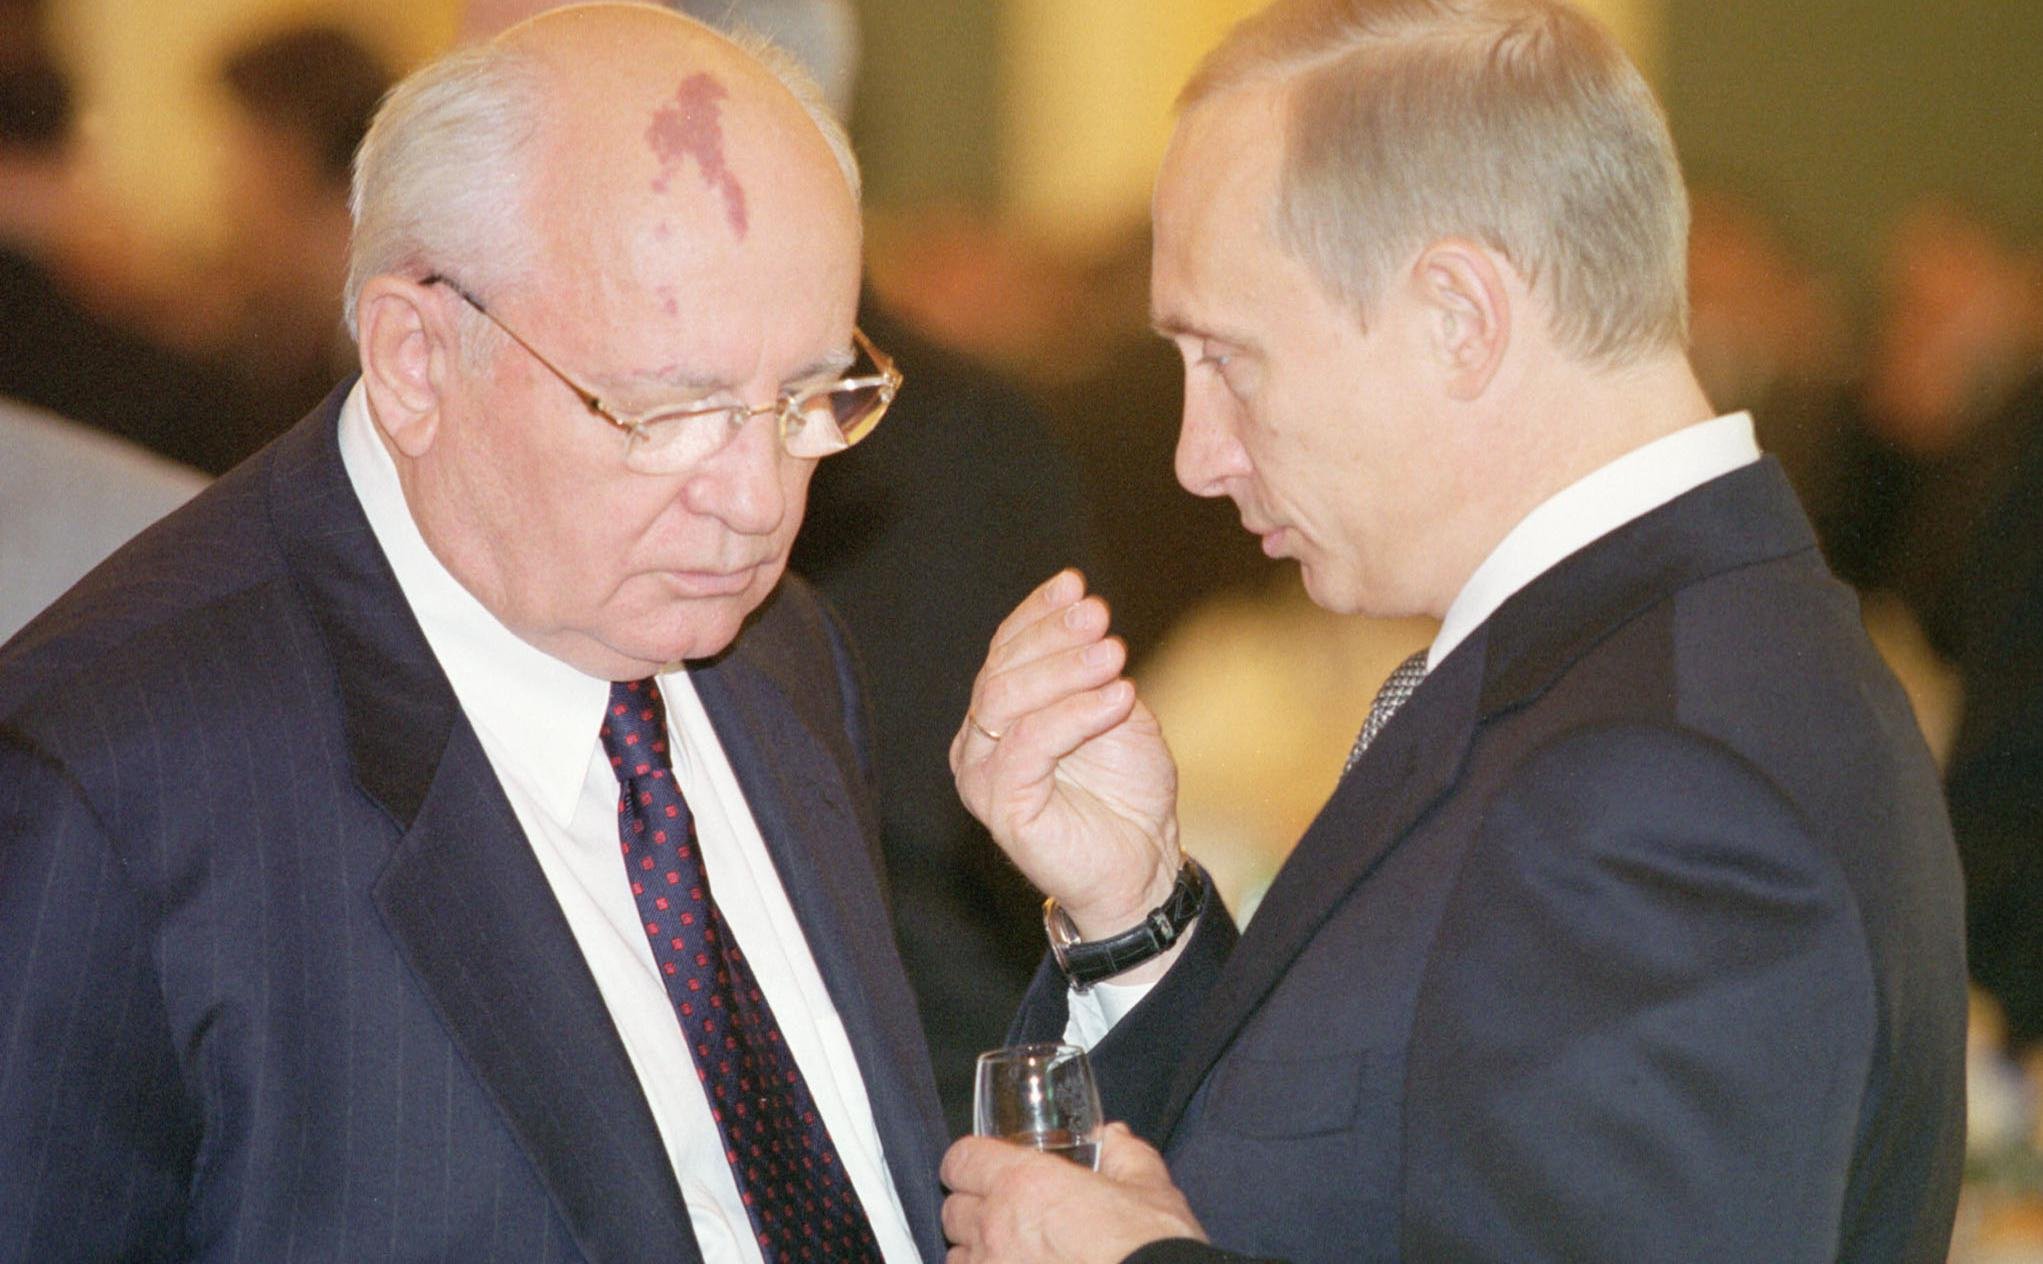 Պուտինը չի կարողանա մասնակցել Գորբաչովին վերջին հրաժեշտը տալու պաշտոնական արարողությանը հագեցած գրաֆիկի պատճառով. Պեսկով